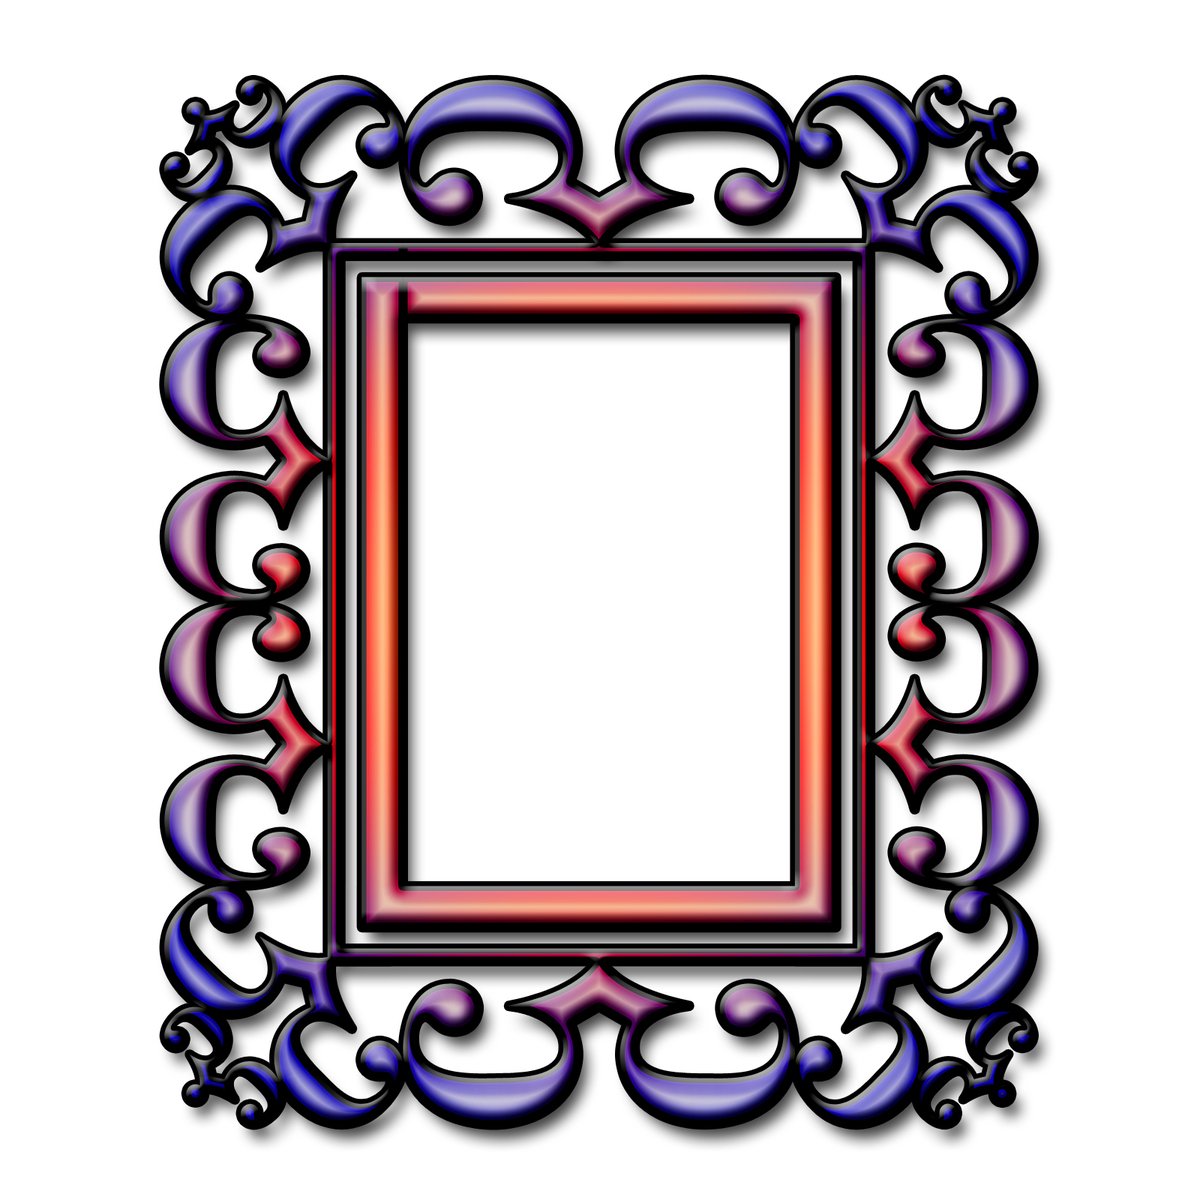 a stylized frame has a fancy design on it